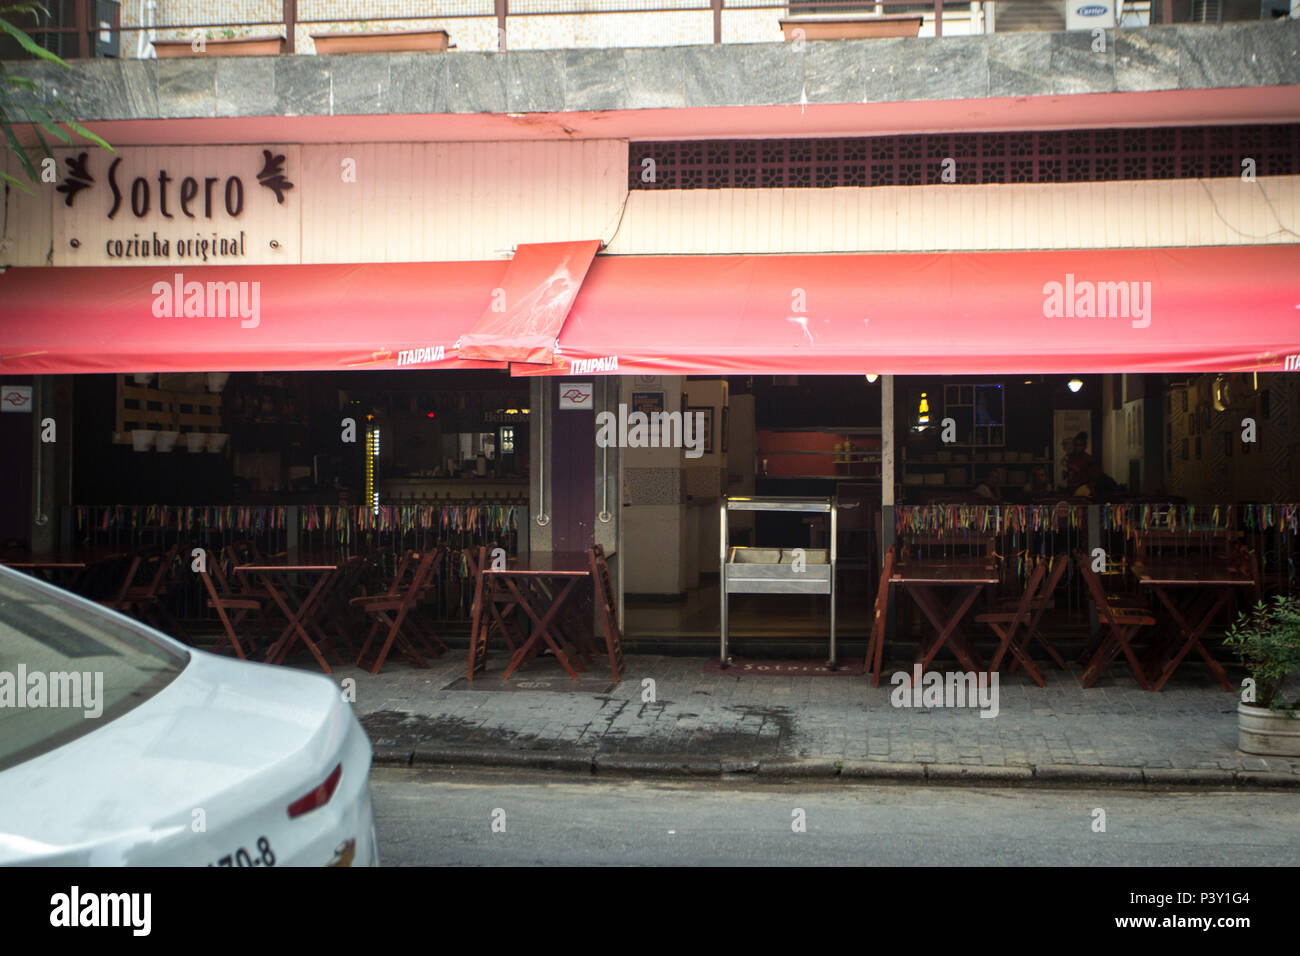 Fachada do restaurante Sotero, situado na Rua Barão de Tatuí, Santa Cecília, região central da Capital Paulista. Stock Photo